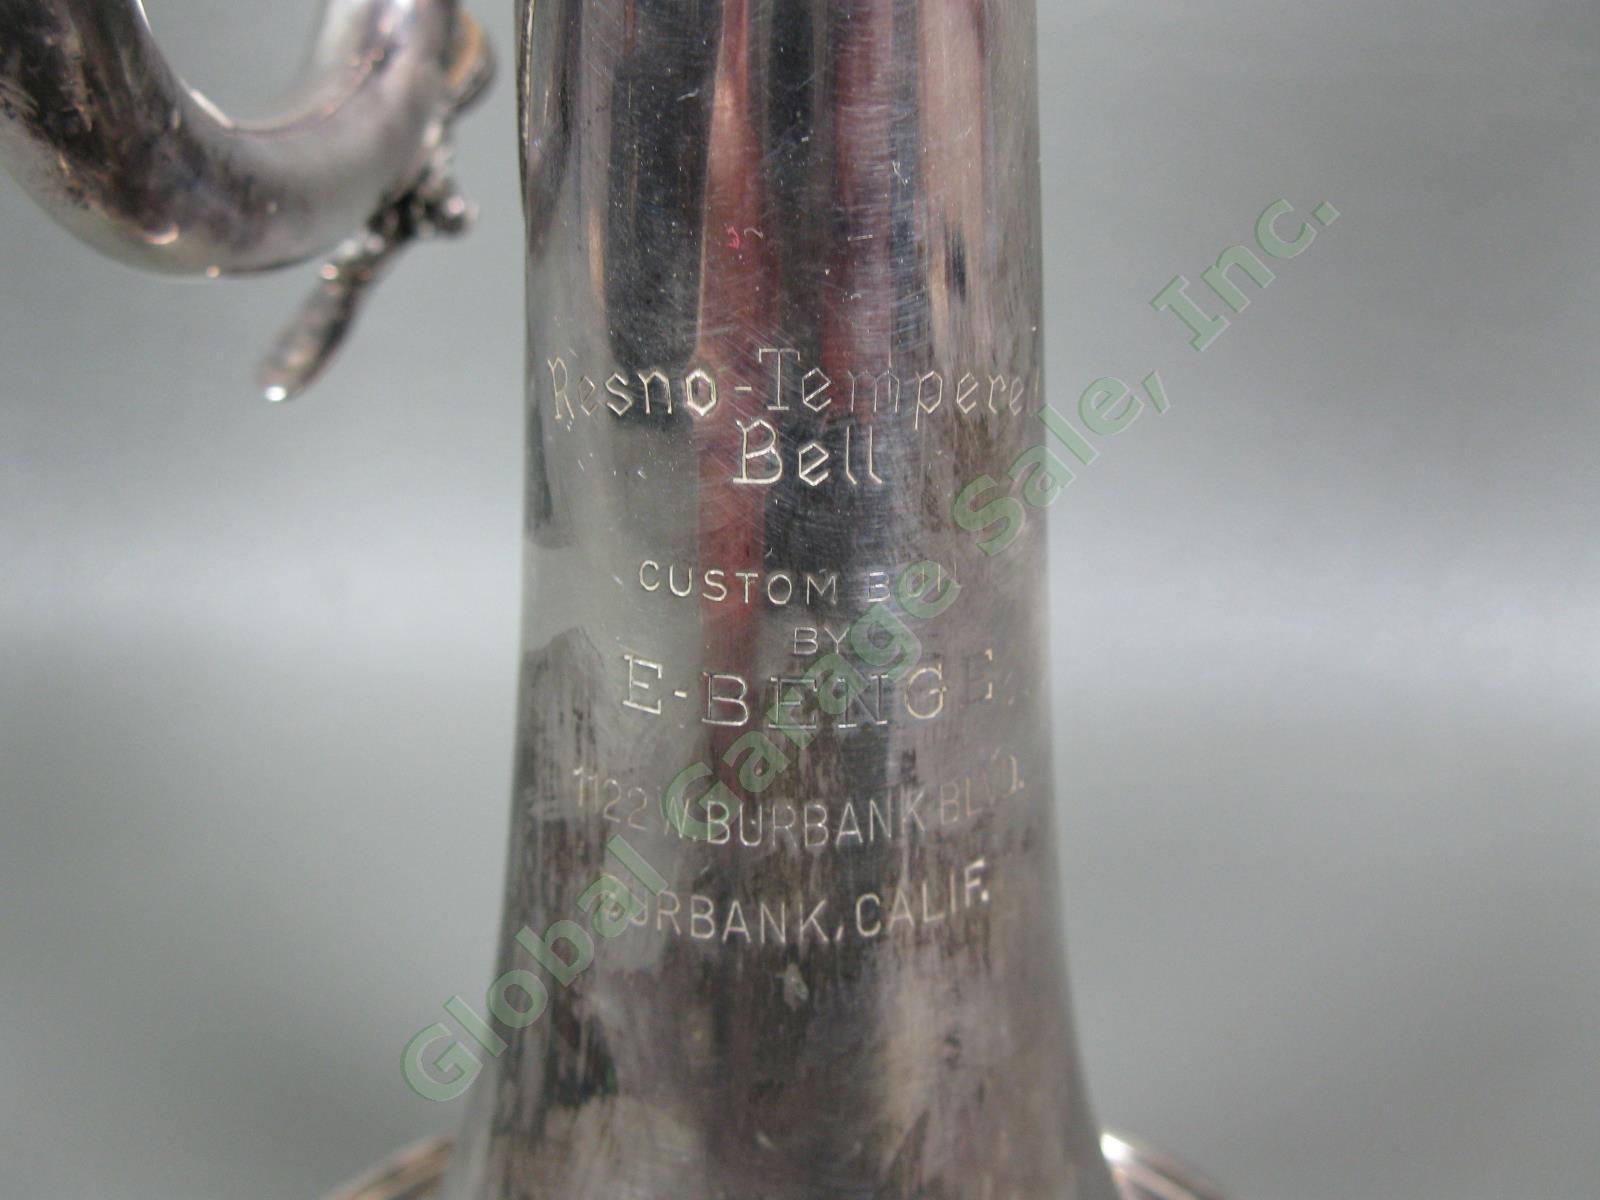 1959 E Elden Benge Resno-Tempered Bell Trumpet #4215 MLP 1122 W Burbank BLVD CA 3